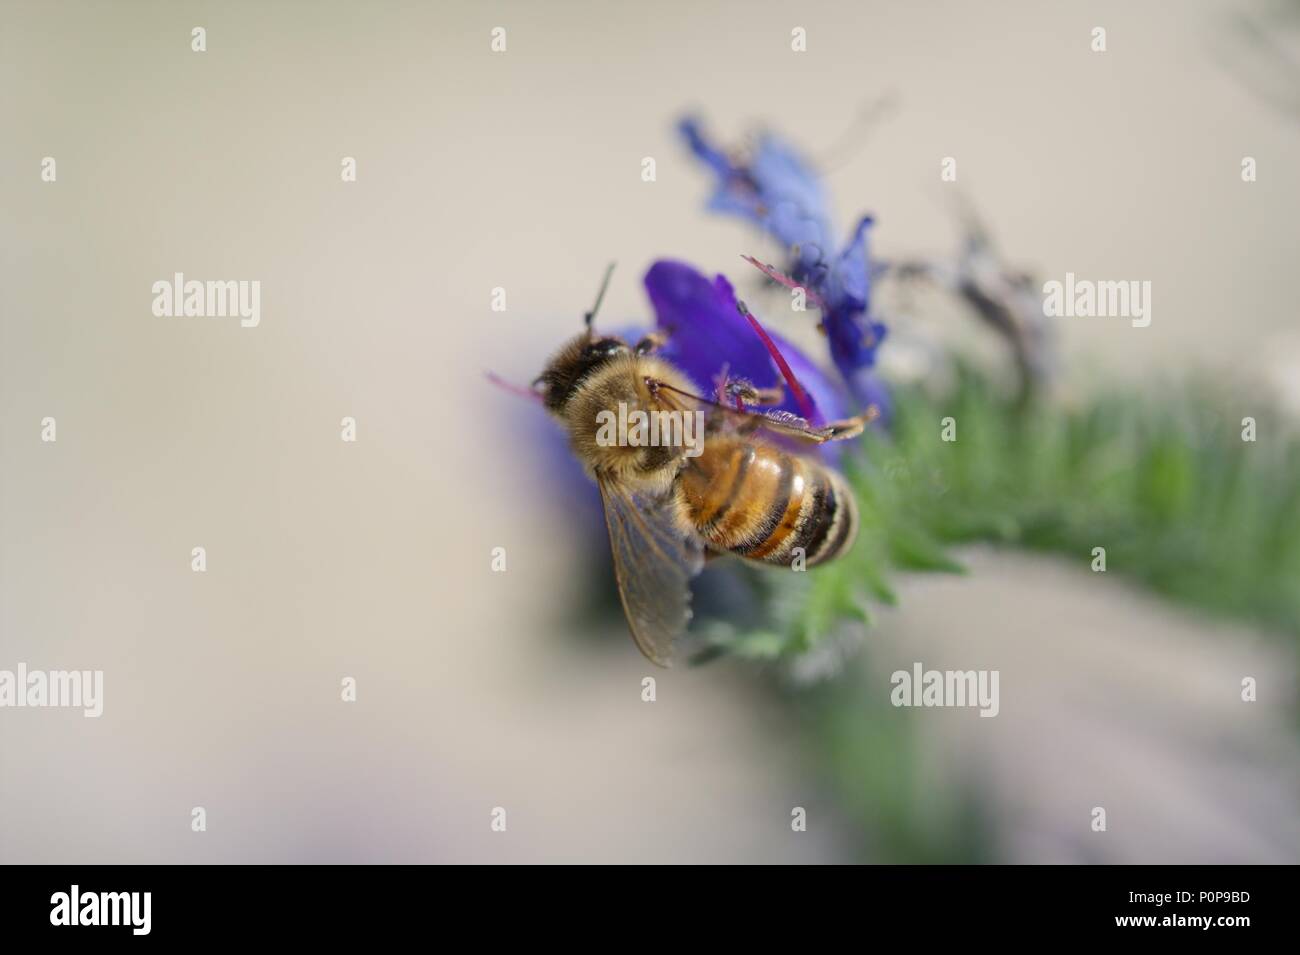 Eine Honigbiene bei der Bestäubung - tun, großartige Arbeit für unsere Natur - sicher! Stockfoto